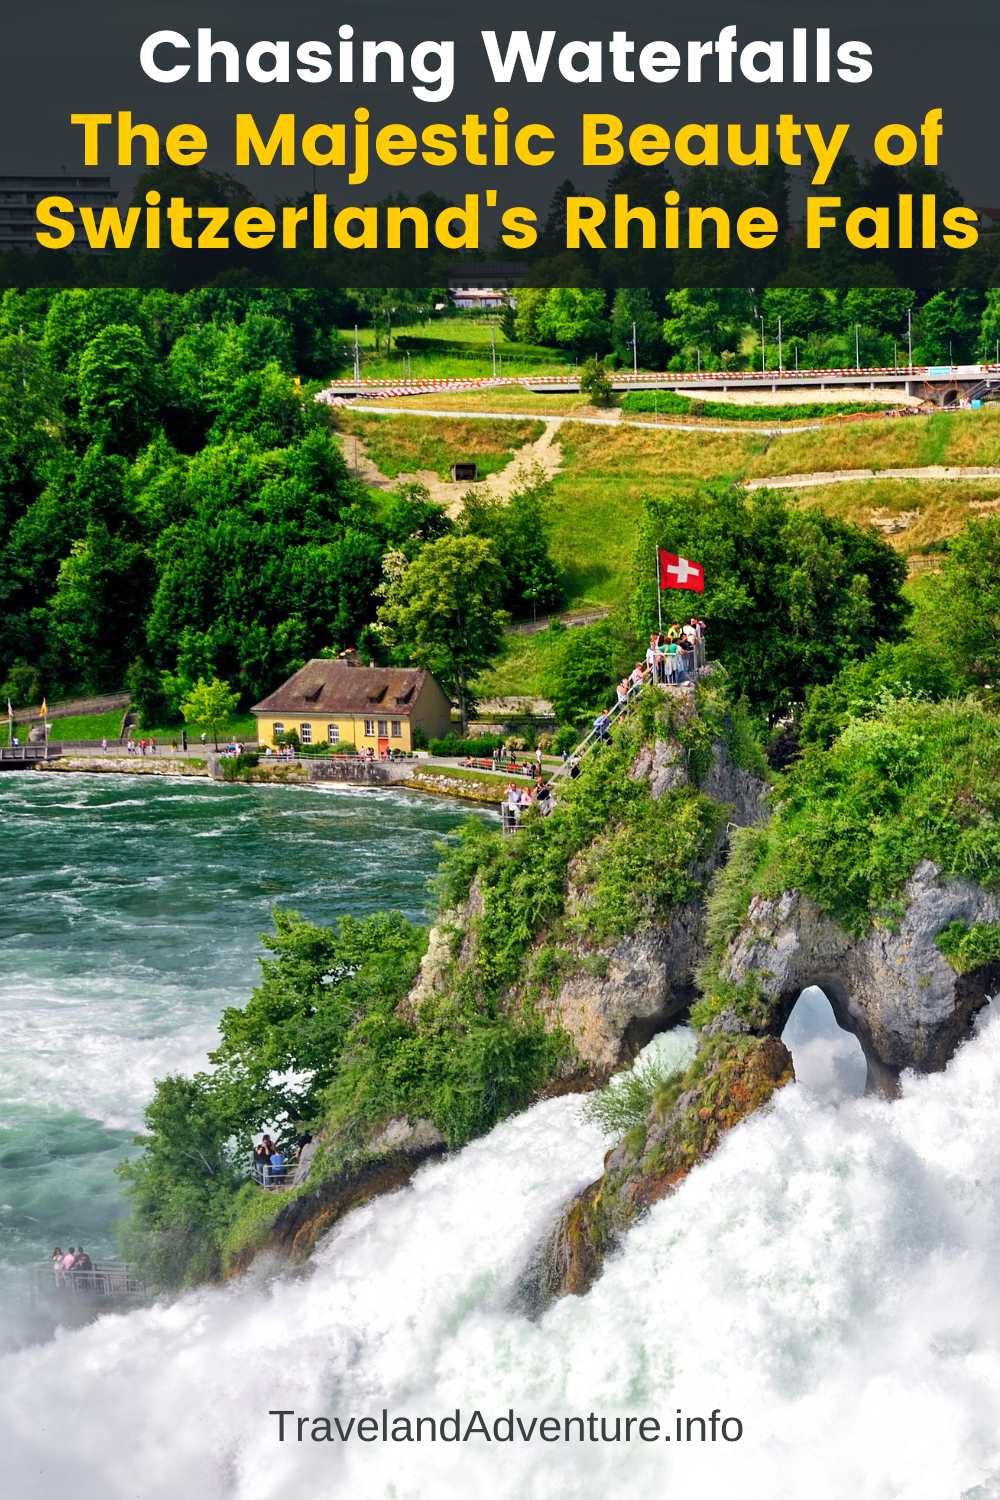 Chasing Waterfalls The Majestic Beauty of Switzerland's Rhine Falls